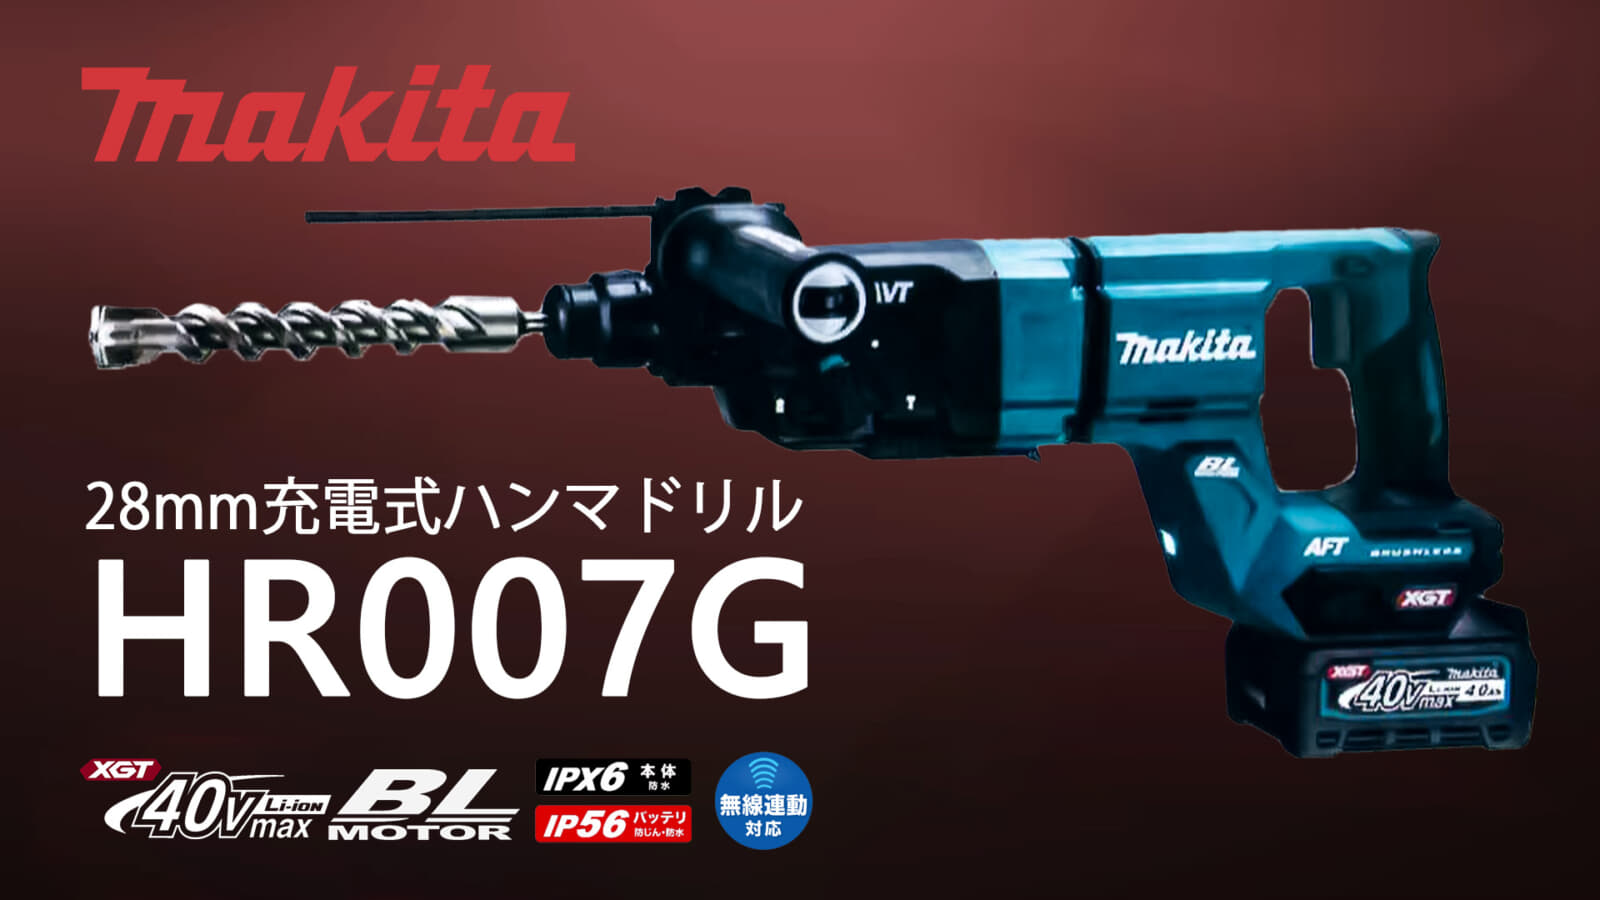 マキタ HR007G 28mm充電式ハンマドリルを発売、Dハンドル仕様